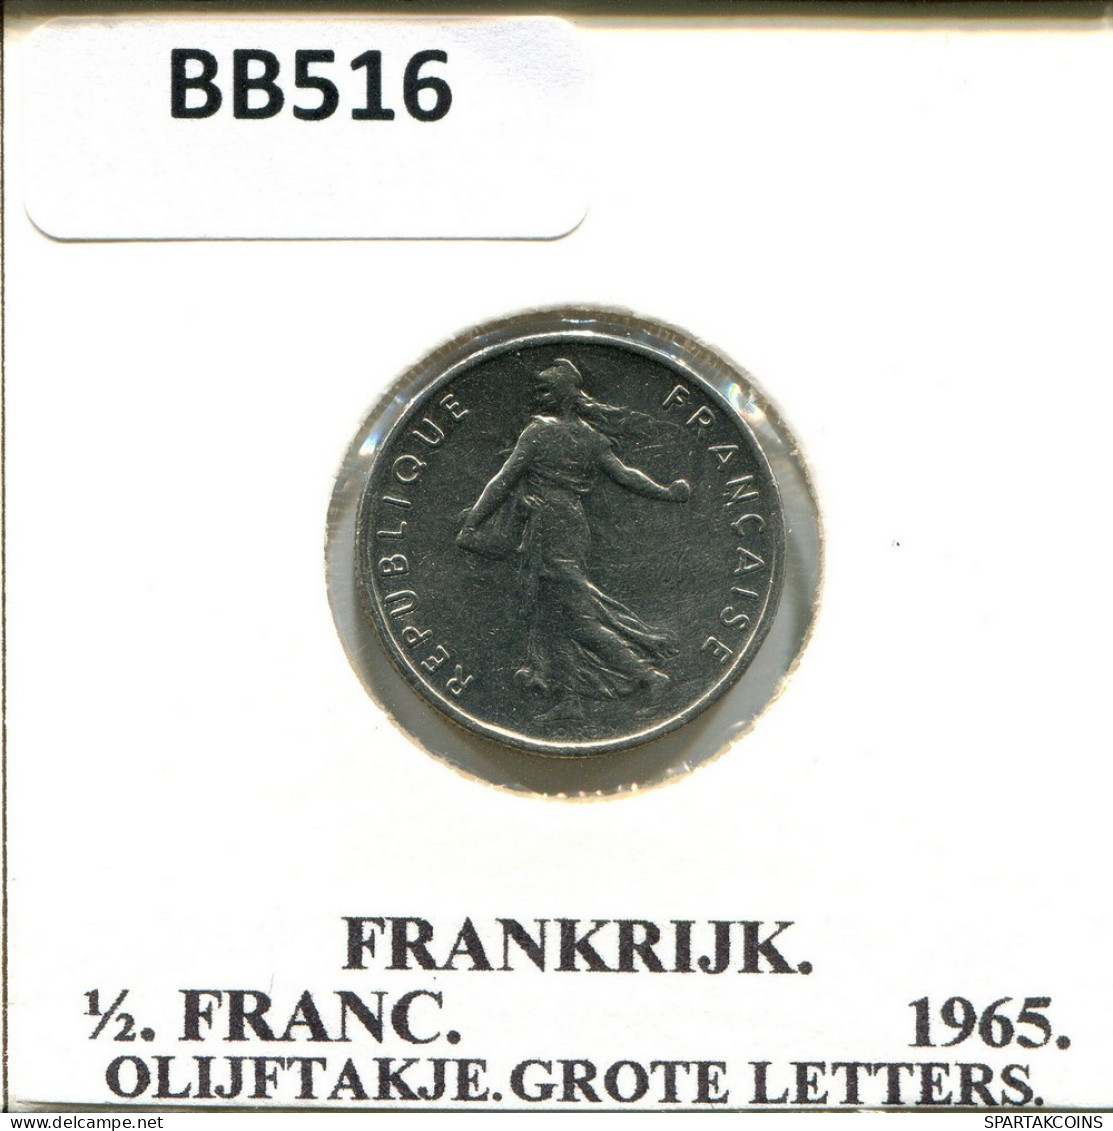 1/2 FRANC 1965 FRANCE Coin #BB516.U.A - 1/2 Franc